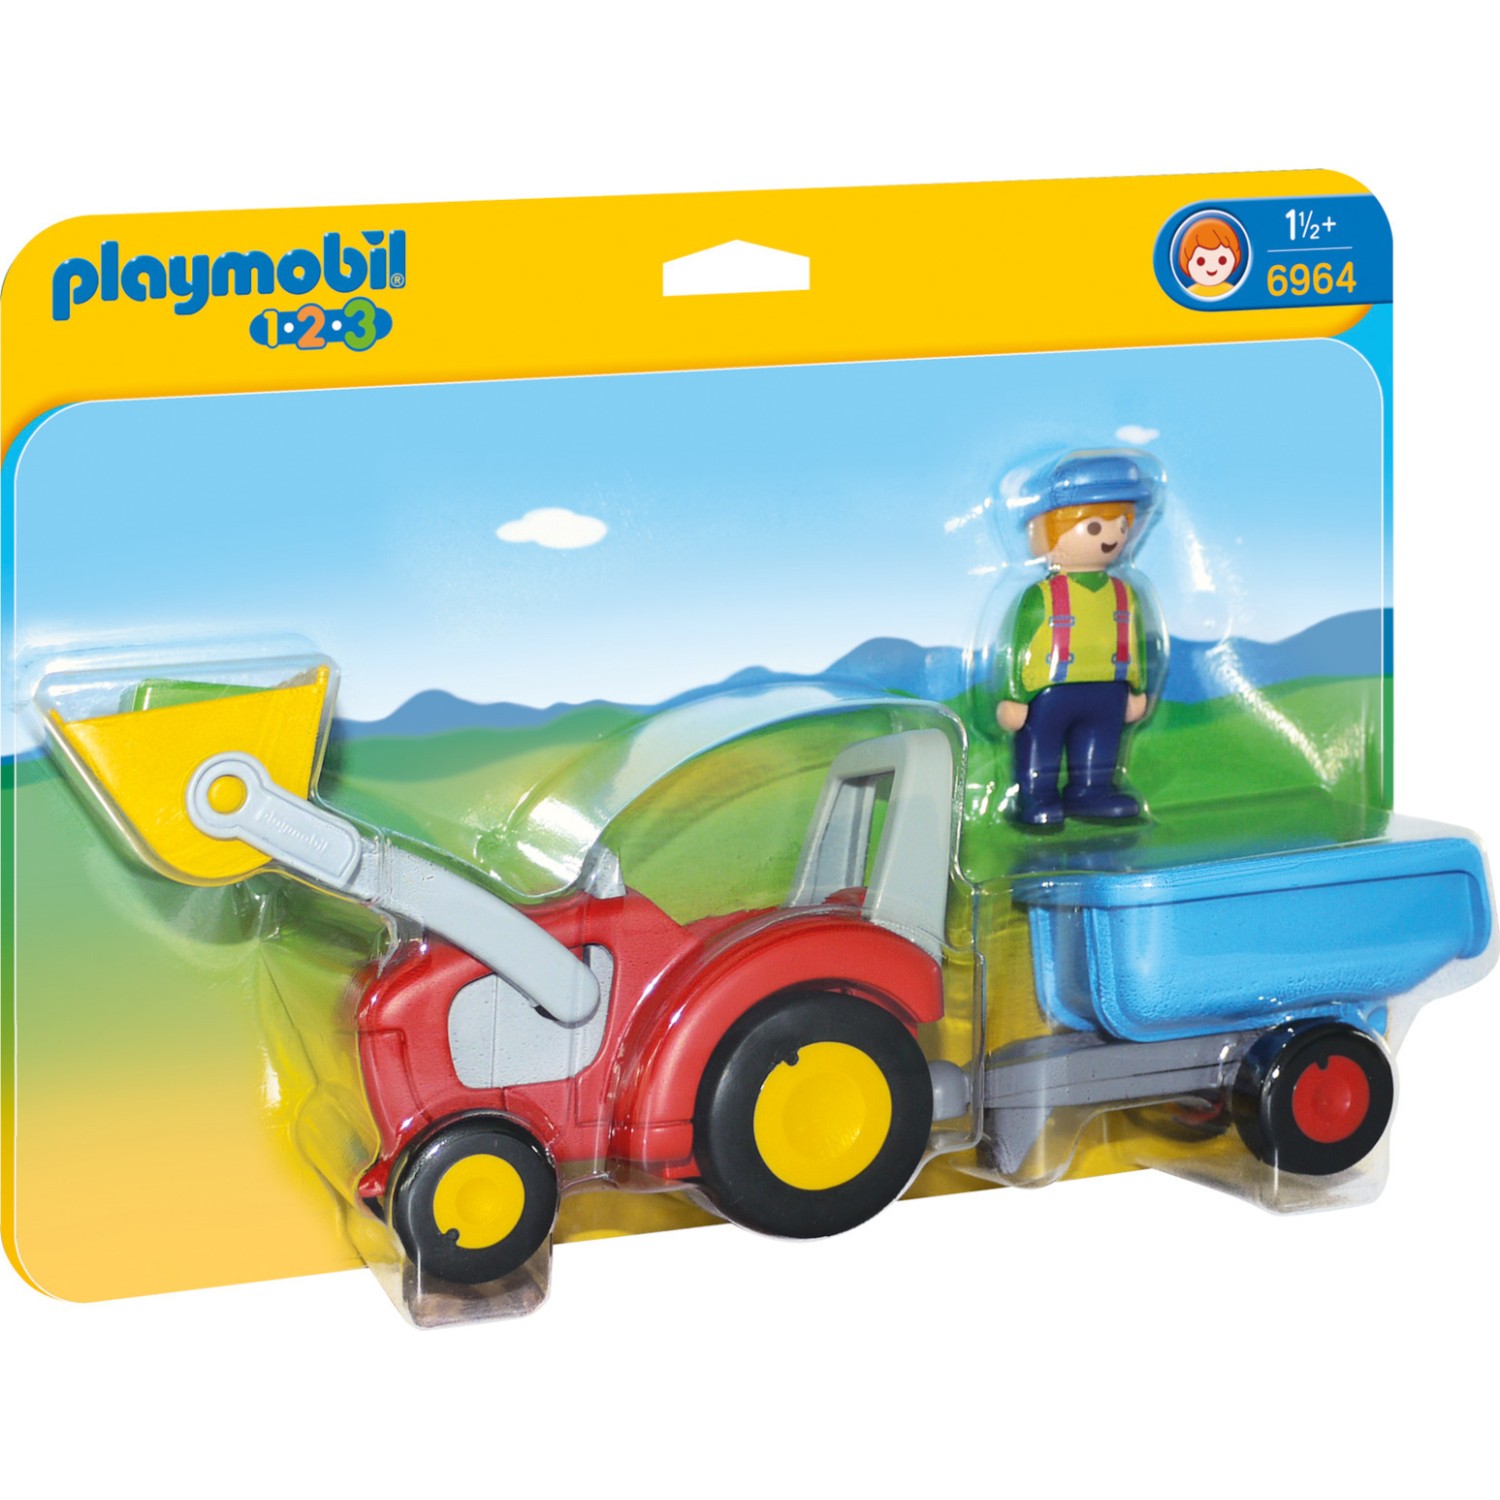 Playmobil 123 Τρακτέρ με ρυμουλκούμενο για 1.5+ ετών